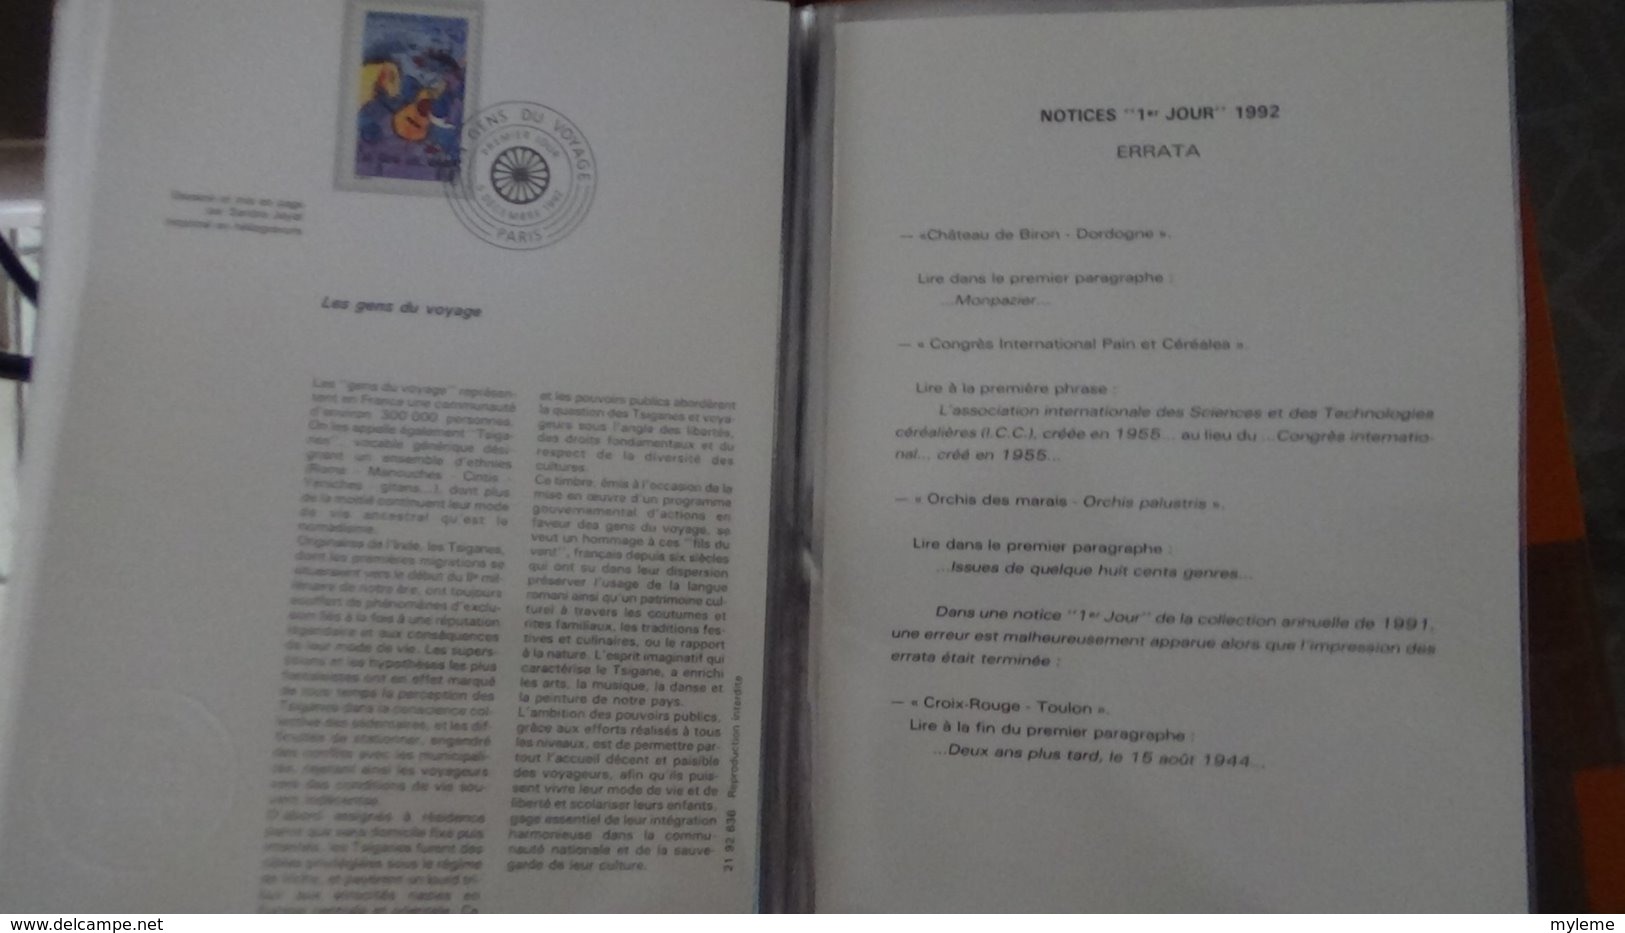 Collection de 35 documents philatéliques dans son emballage d'origine de l'année 1992